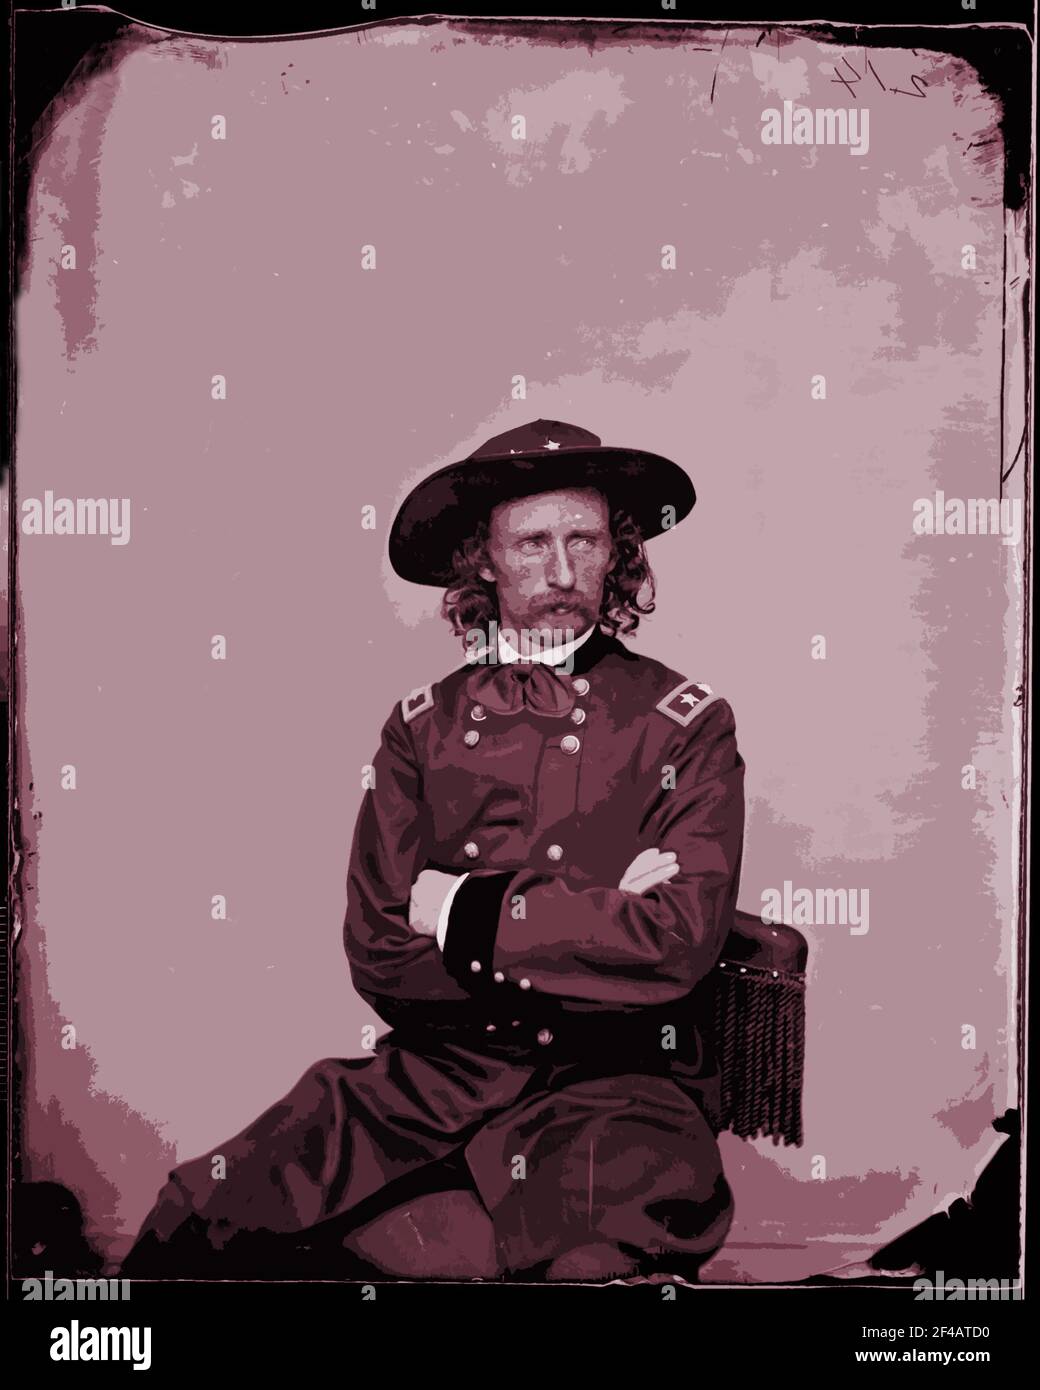 Una fotografía de estudio de 1885 del mayor General George Armstrong Custer alterado con un filtro de efectos especiales de Photoshop. Foto de stock